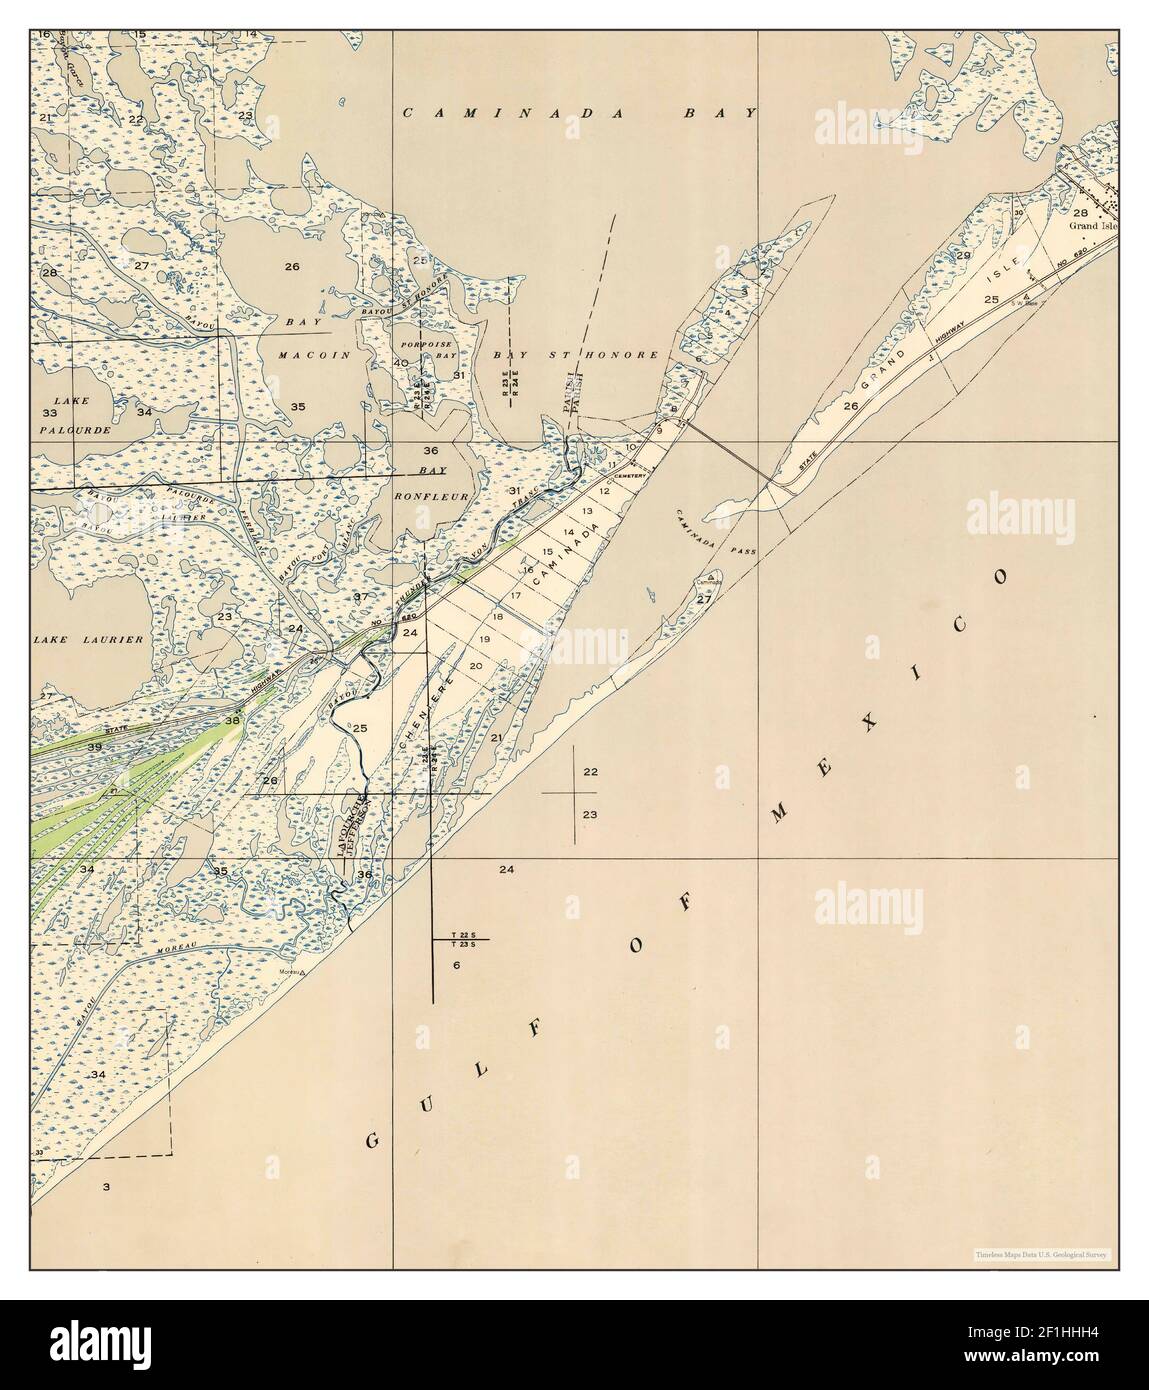 Caminada Pass, Louisiana, Karte 1947, 1:31680, Vereinigte Staaten von Amerika von Timeless Maps, Daten U.S. Geological Survey Stockfoto